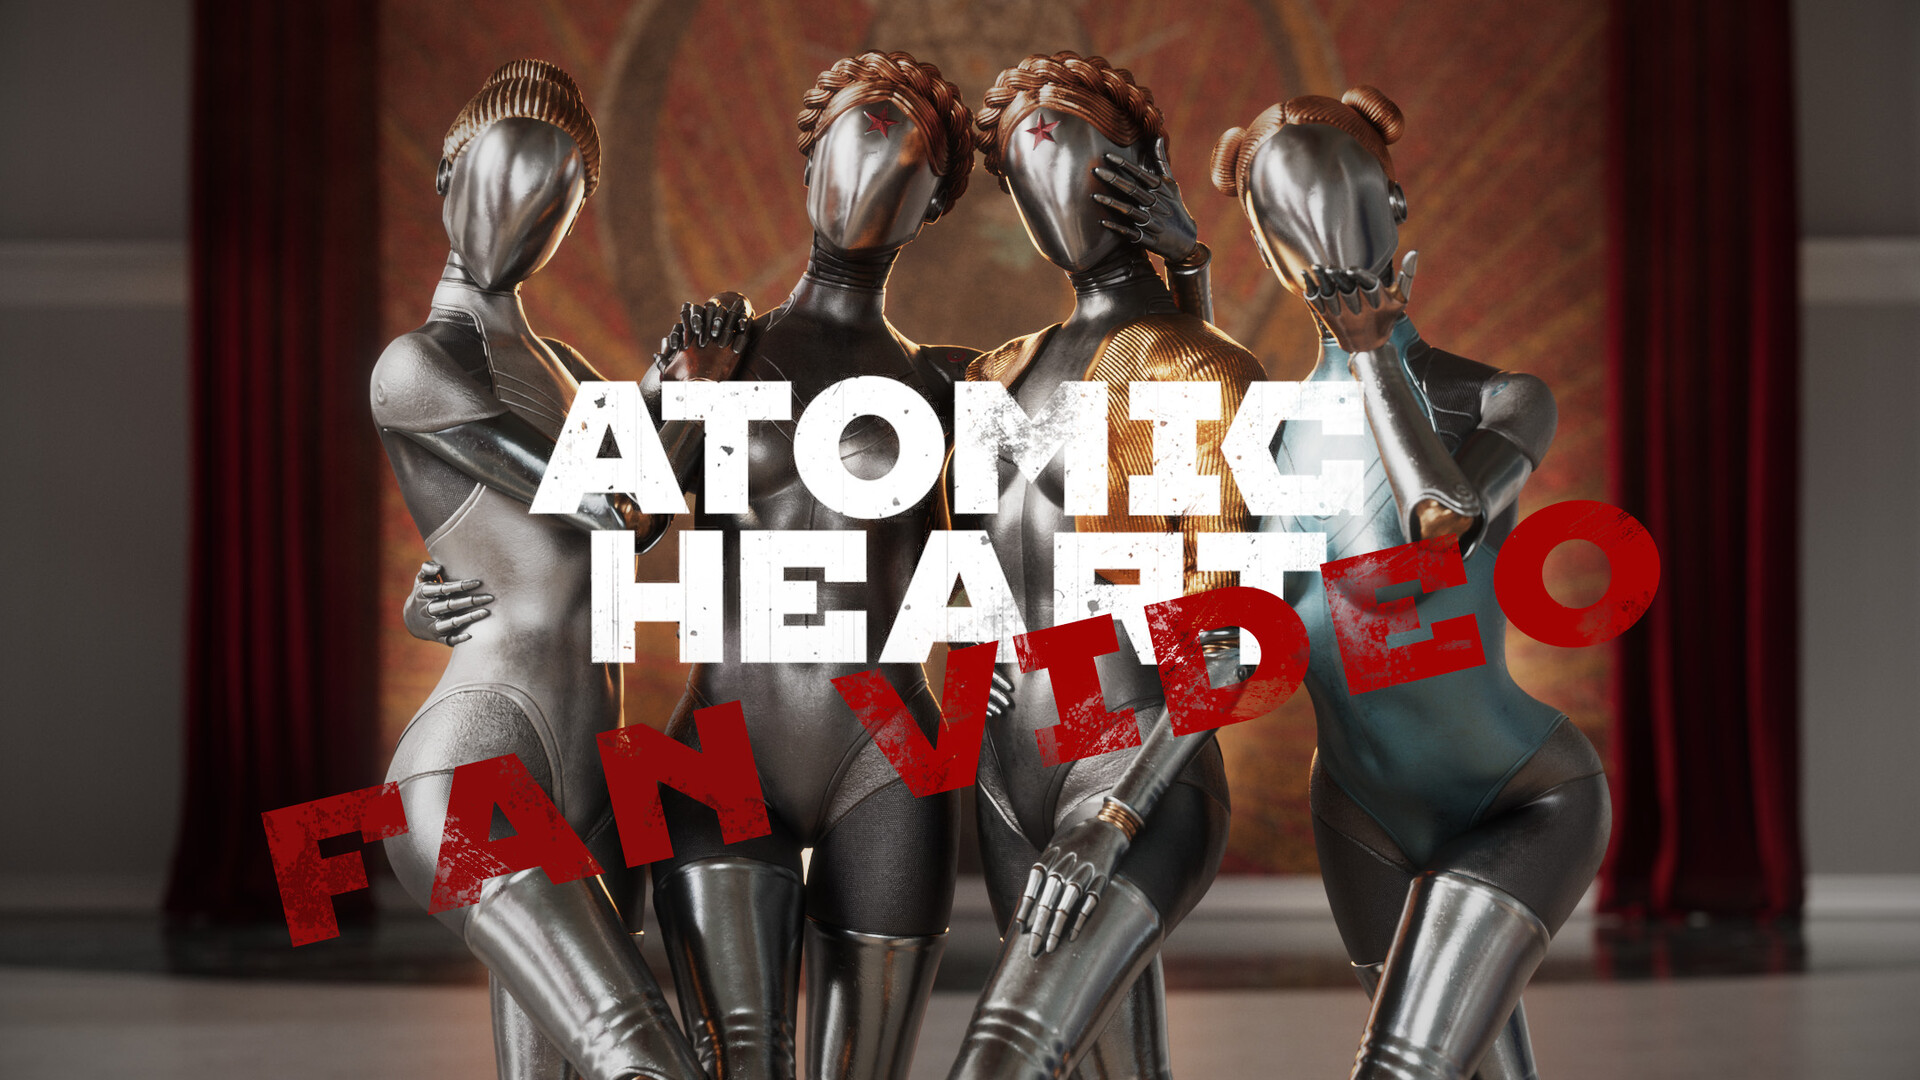 ArtStation - Atomic Heart - FanArt Р2В2